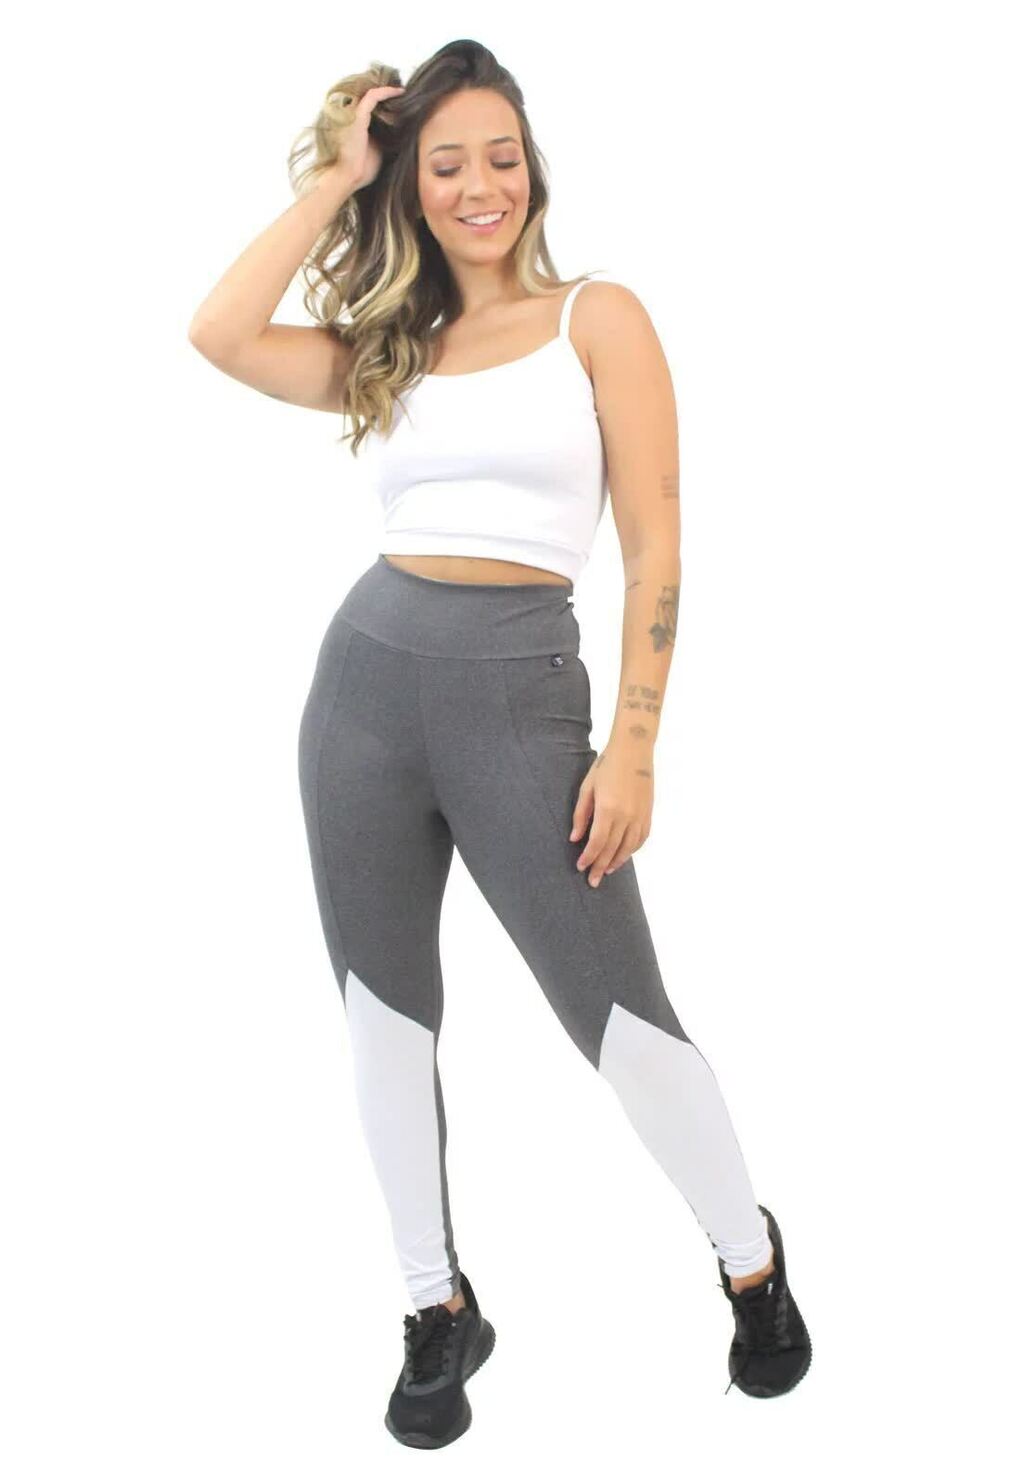 Conjunto Fitness Feminino Calça Legging e Top Transparencia REF: LX128 -  Racy Modas